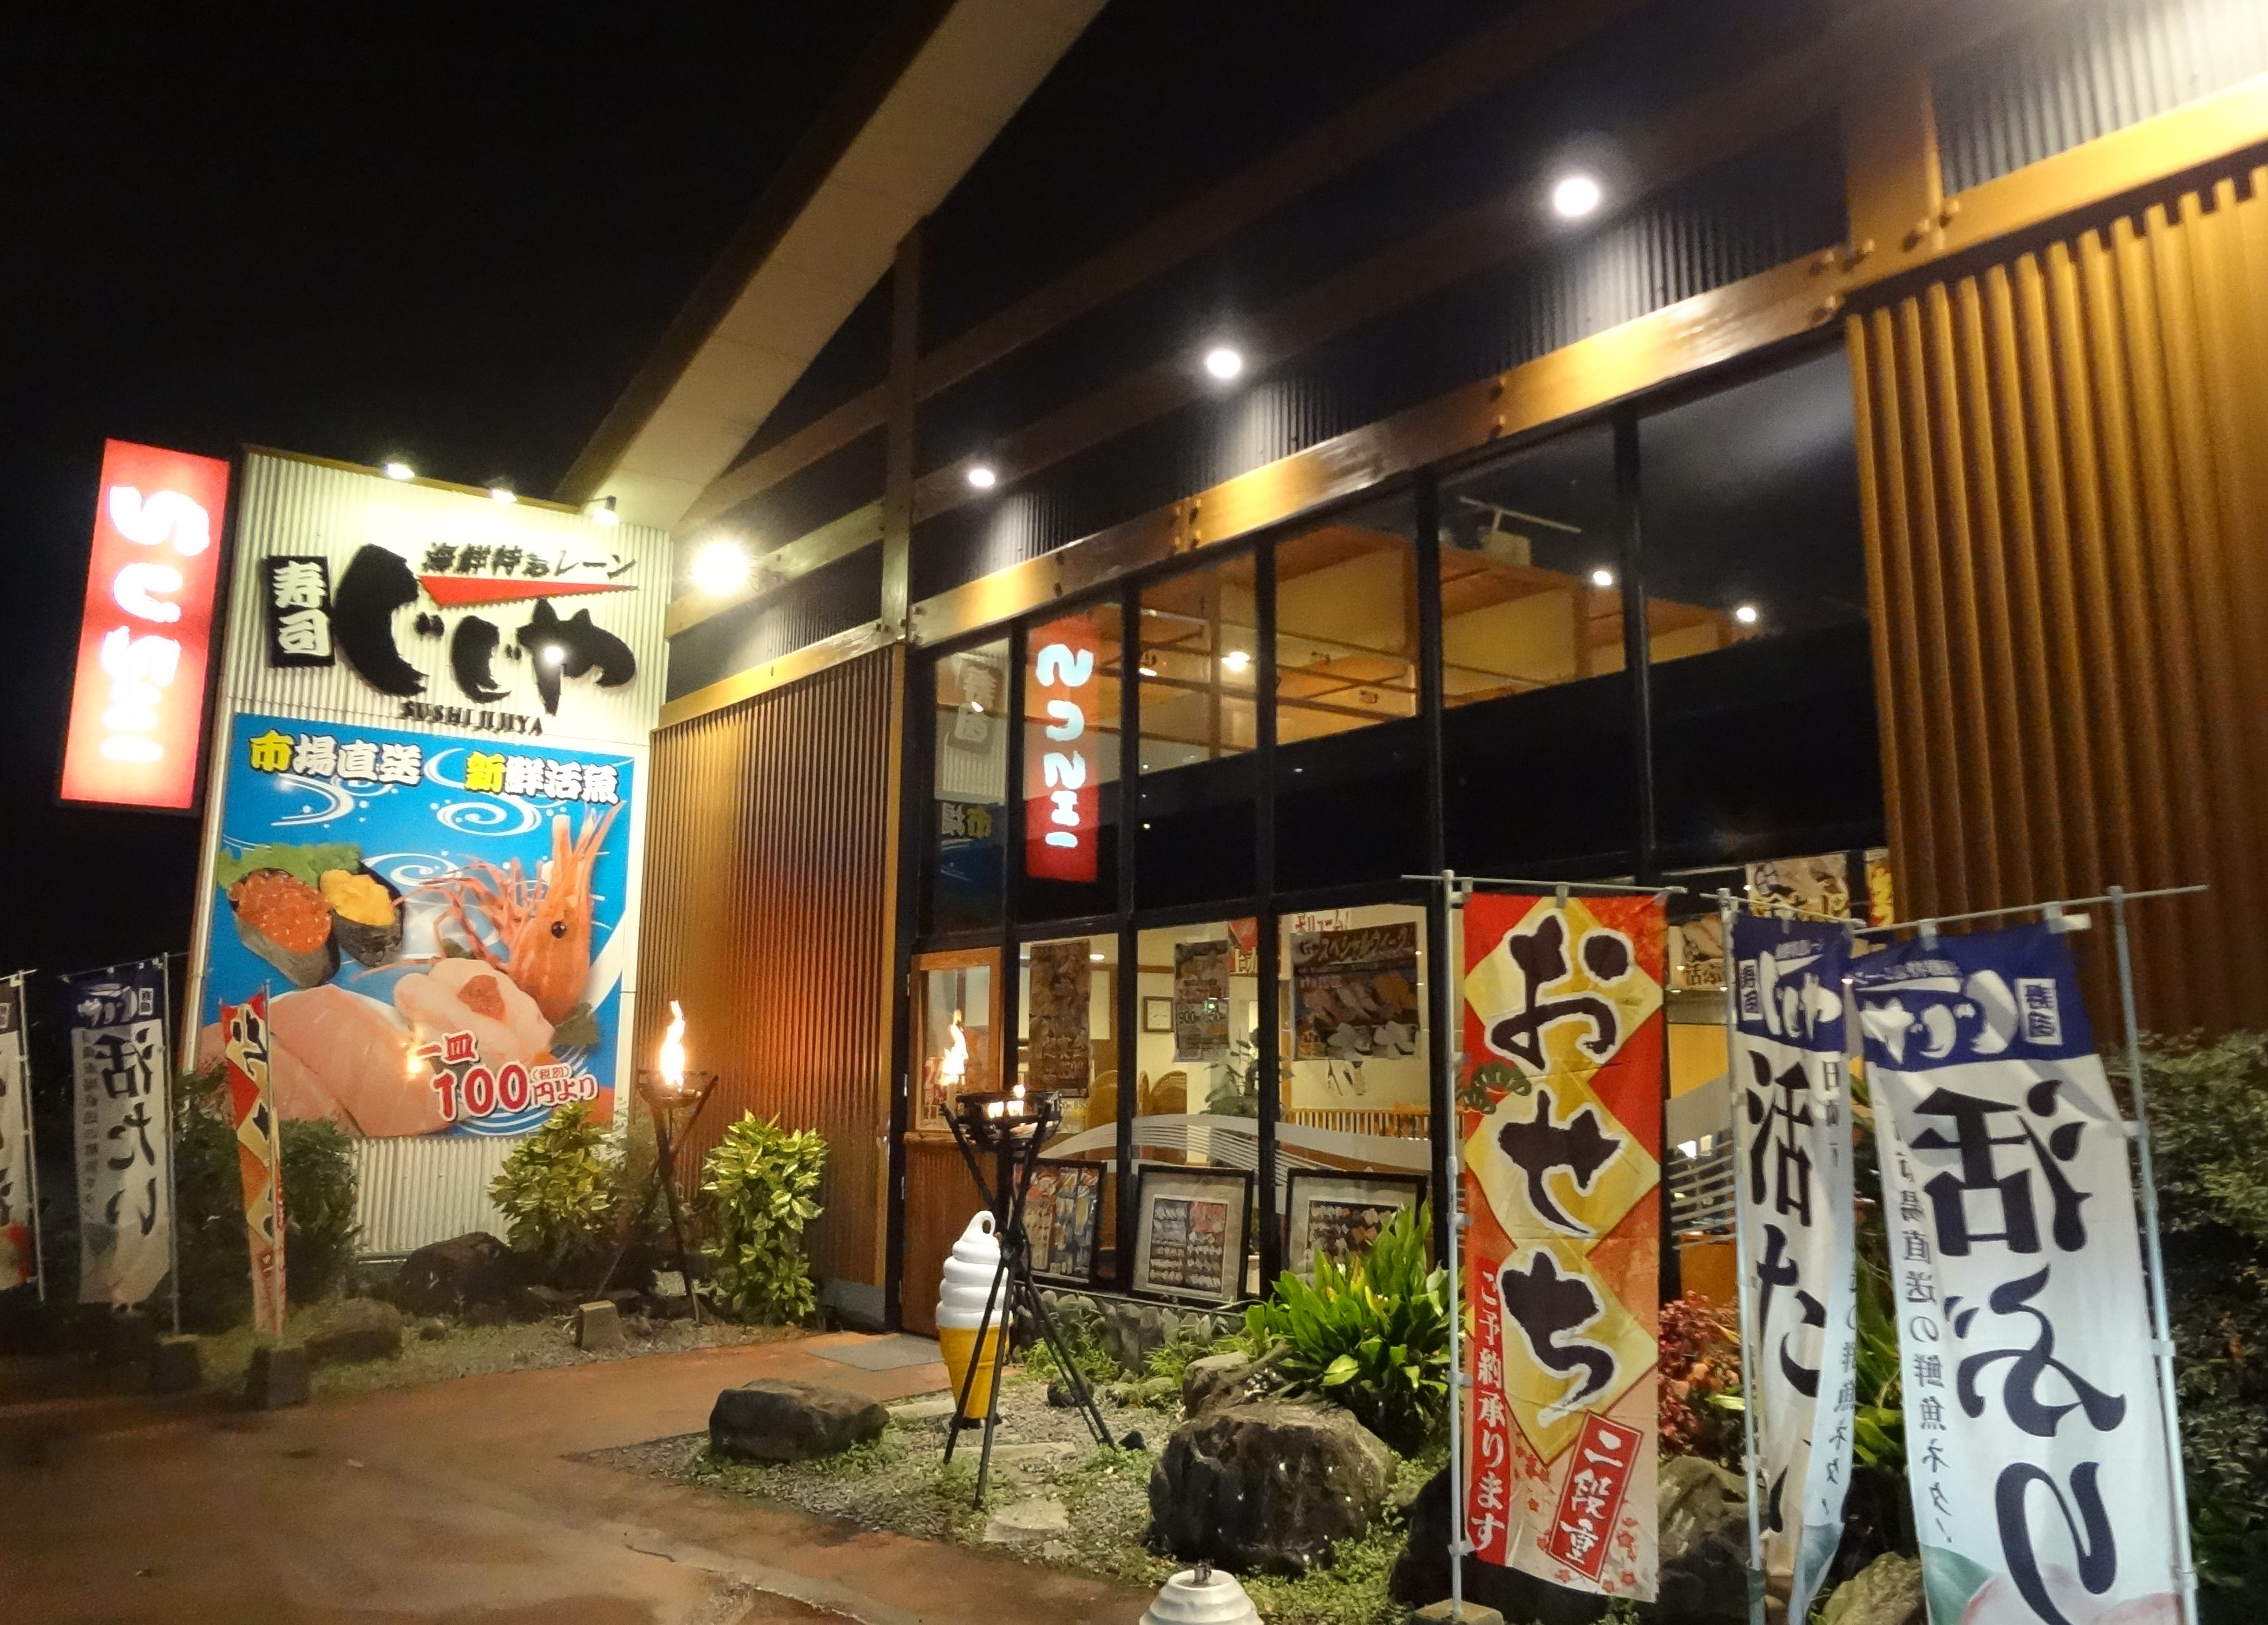 じじや 南熊本店 田崎市場直送の新鮮なお寿司が食べれる回転寿司屋 熊本市中央区 インドア主婦の熊本探訪ブログ